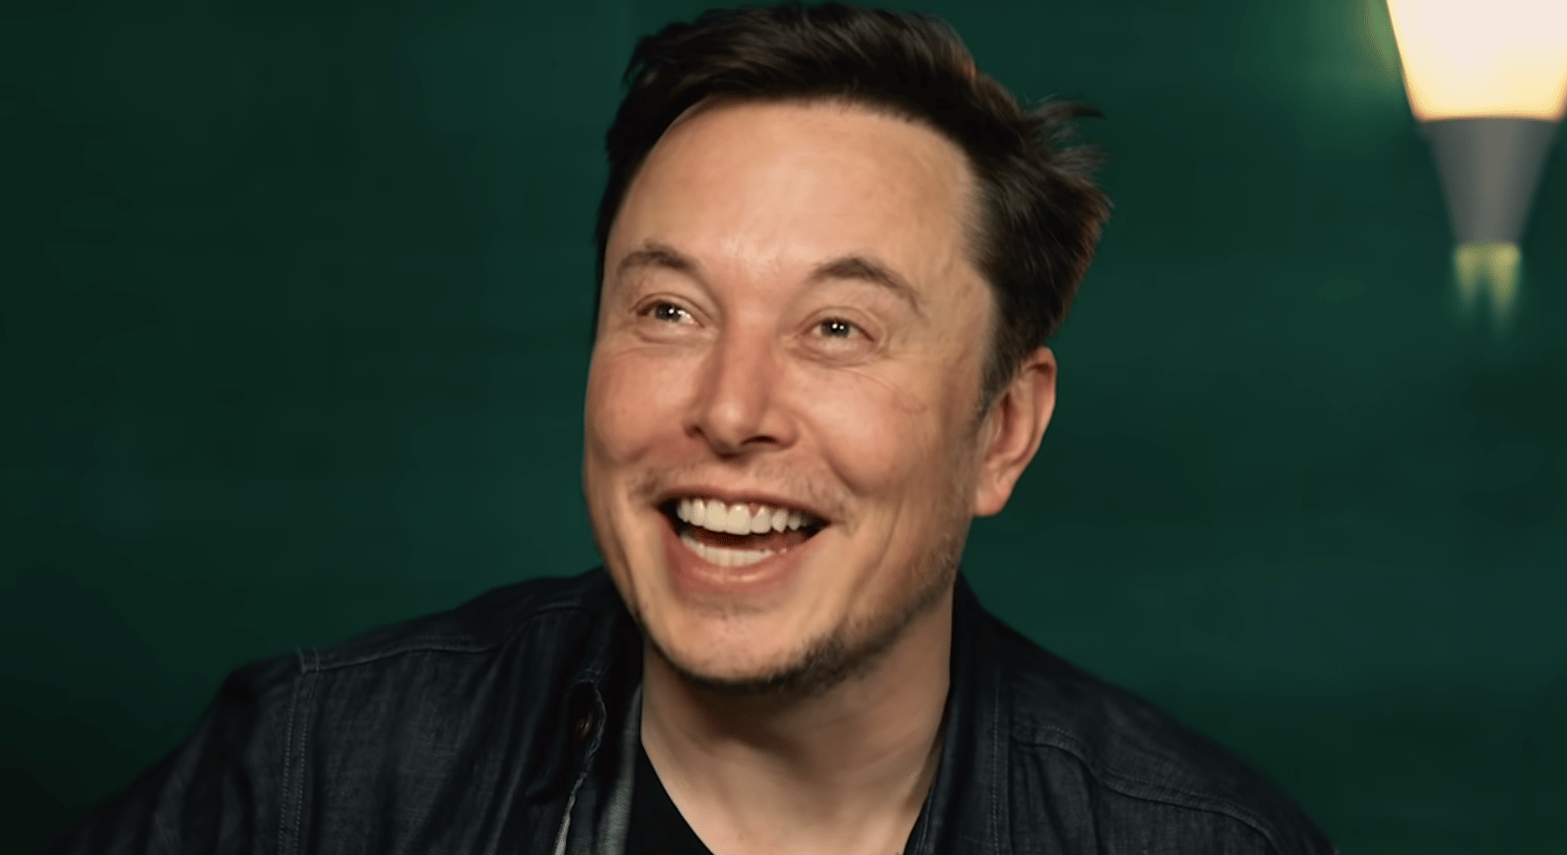 Elon Musk est connu pour son excentricité